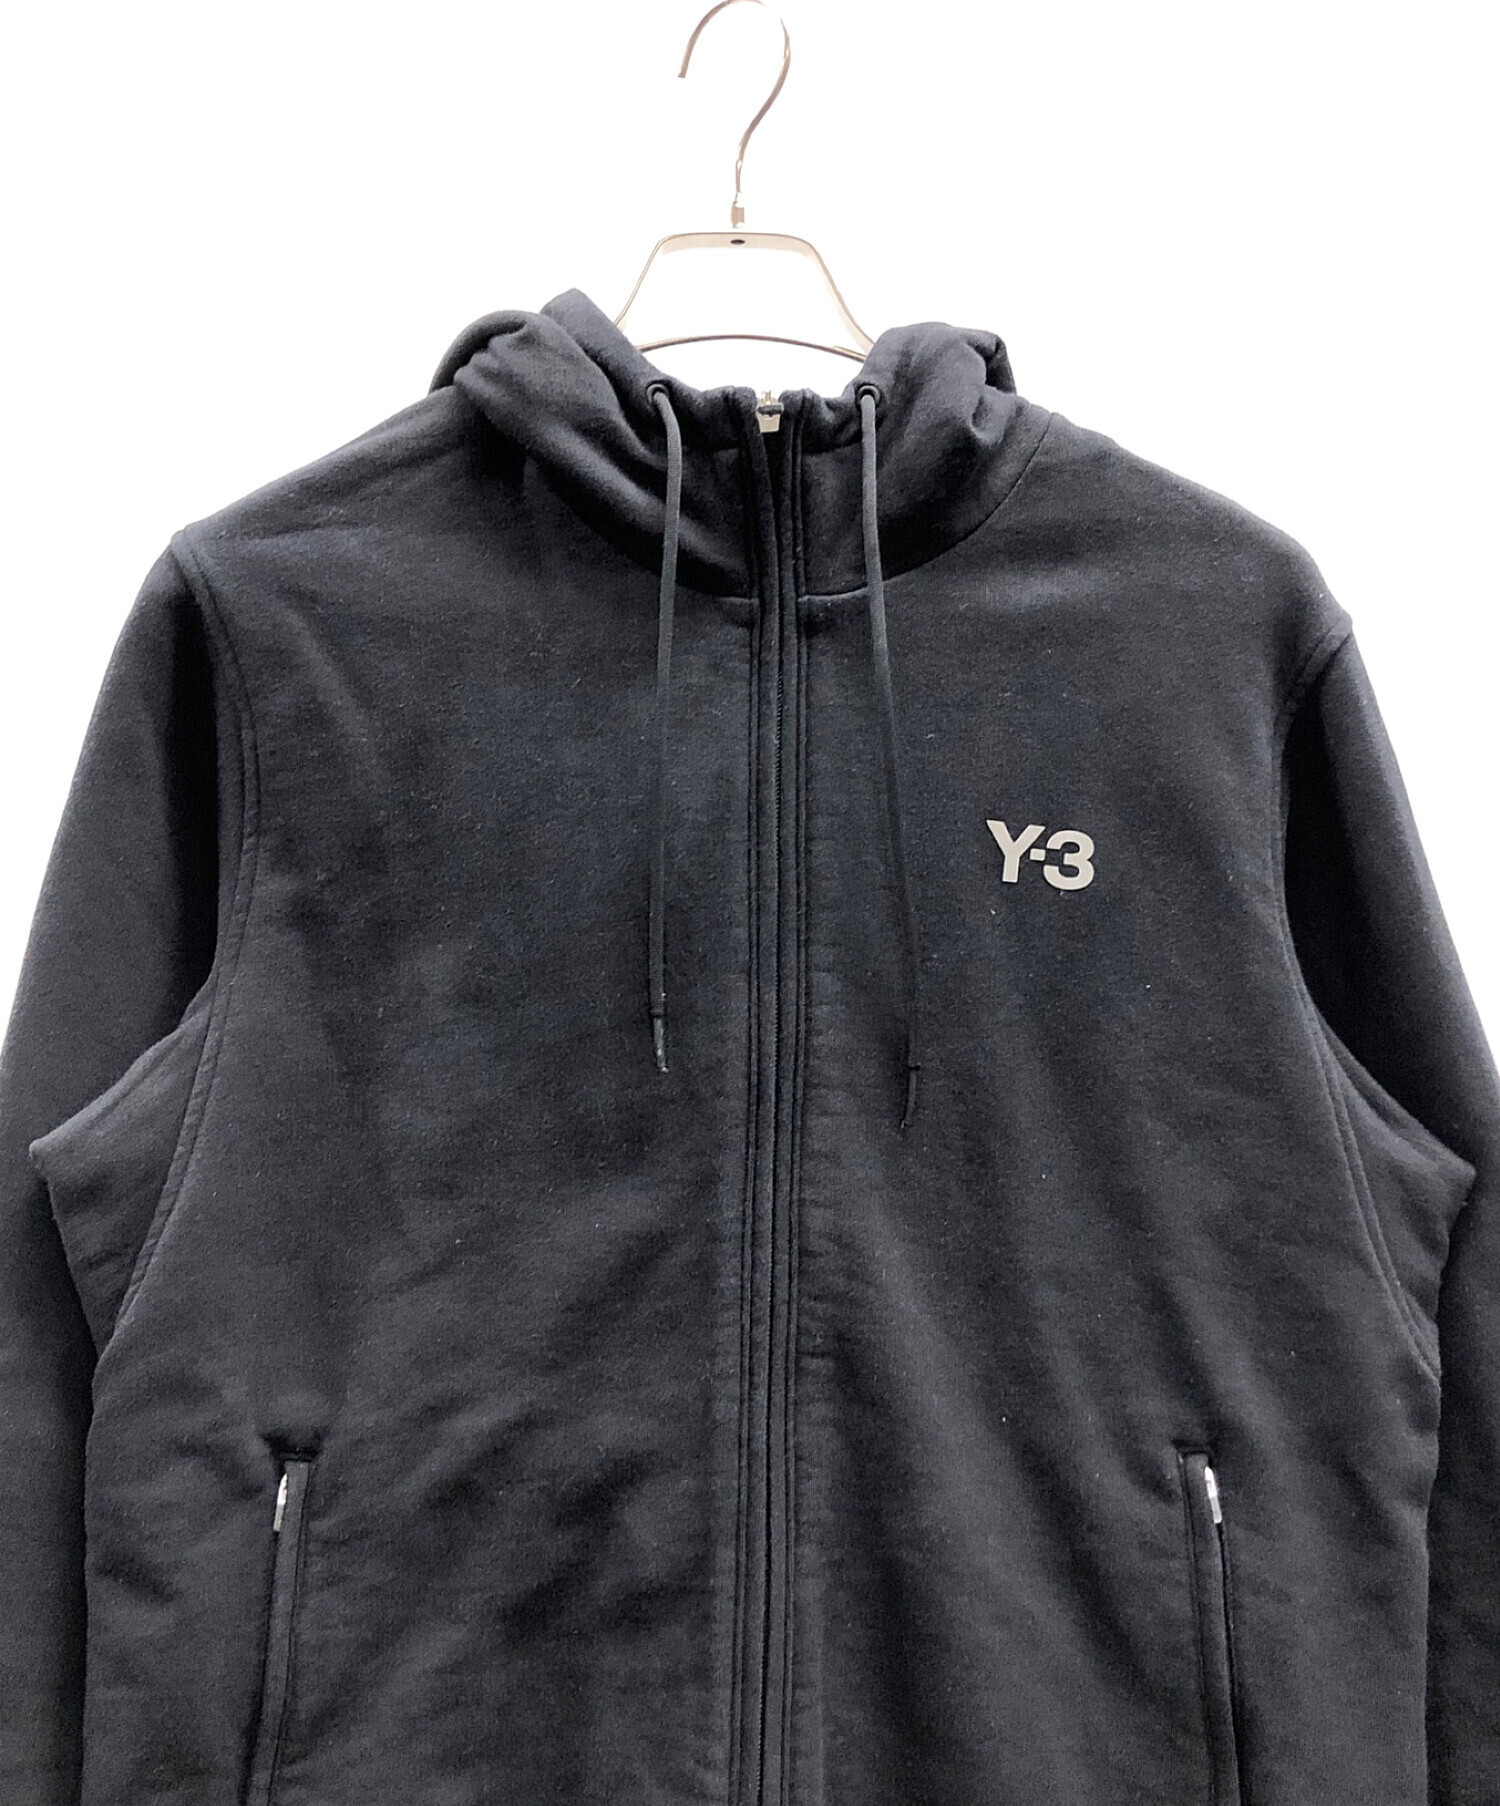 10,200円Y-3 YOHJI YAMAMOTO adidas パーカーコート